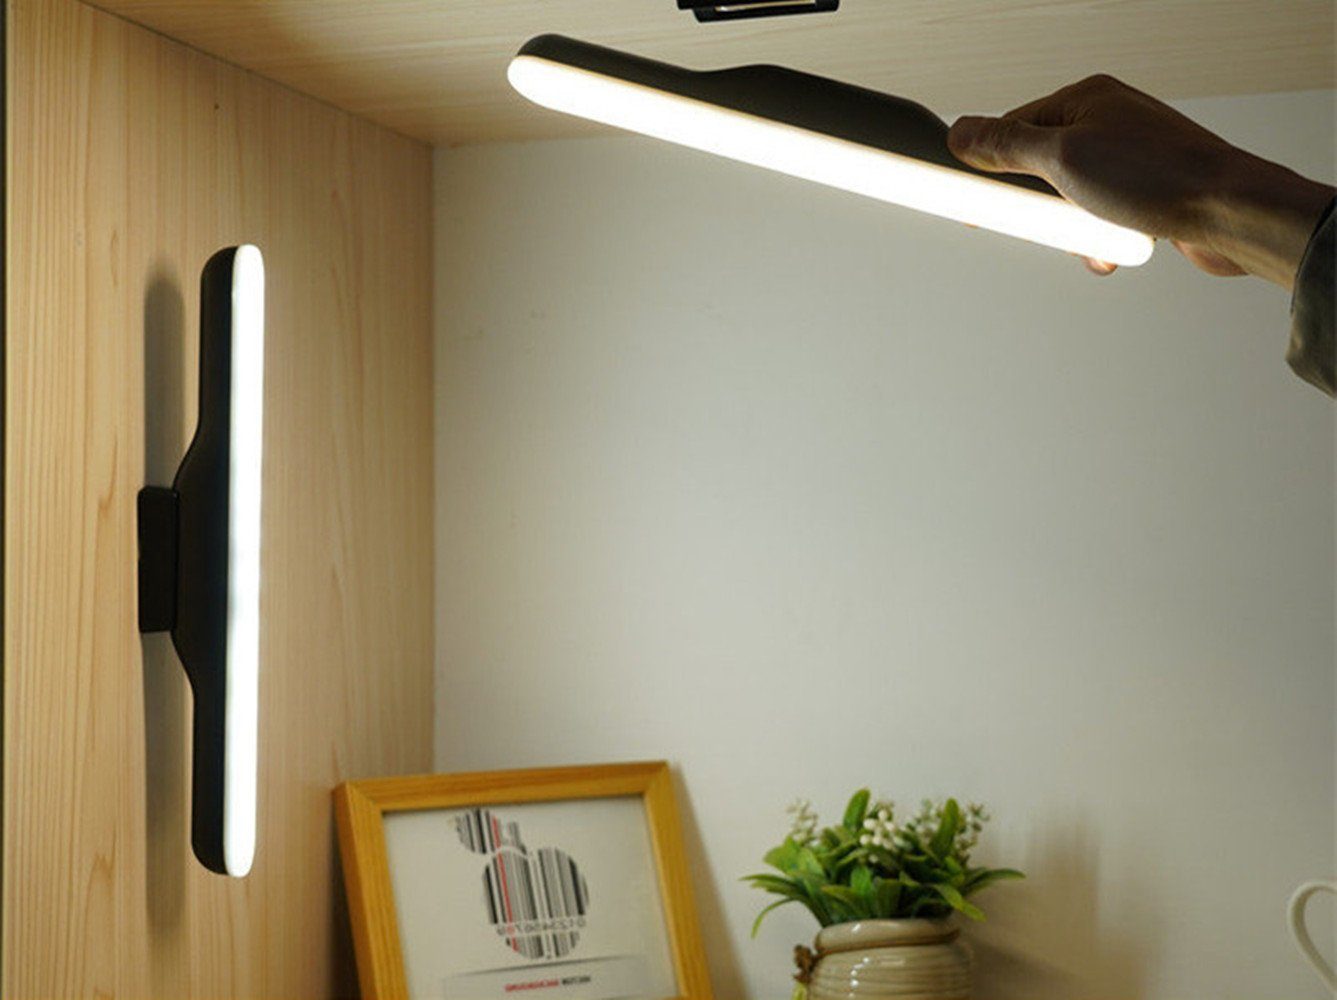 XDOVET LED Tischleuchte Schreibtischlampe LED, Tischlampe mit Magnet,LED Unterbaulampe, Unterbauleuchte Hängende Touch Tischlampe Beleuchtung Einstellen